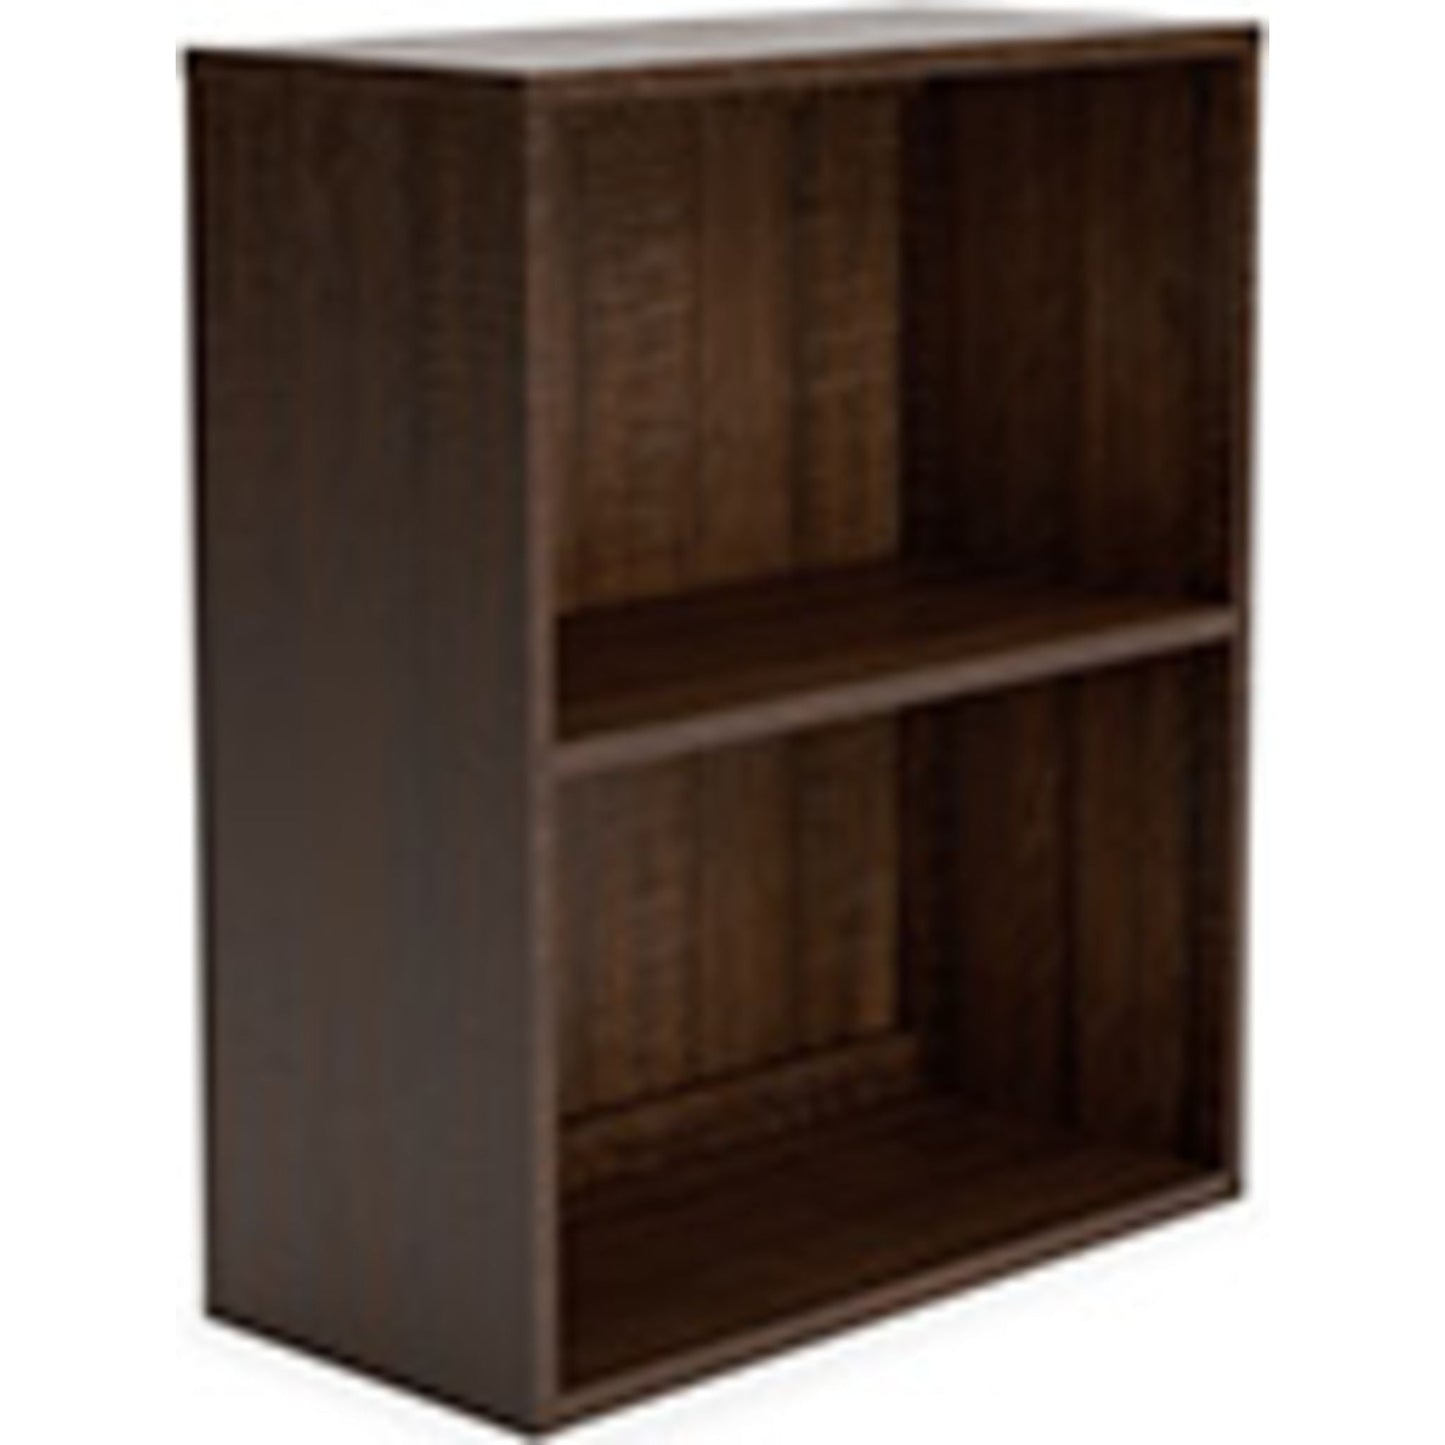 Camiburg Small Bookcase - Warm Brown